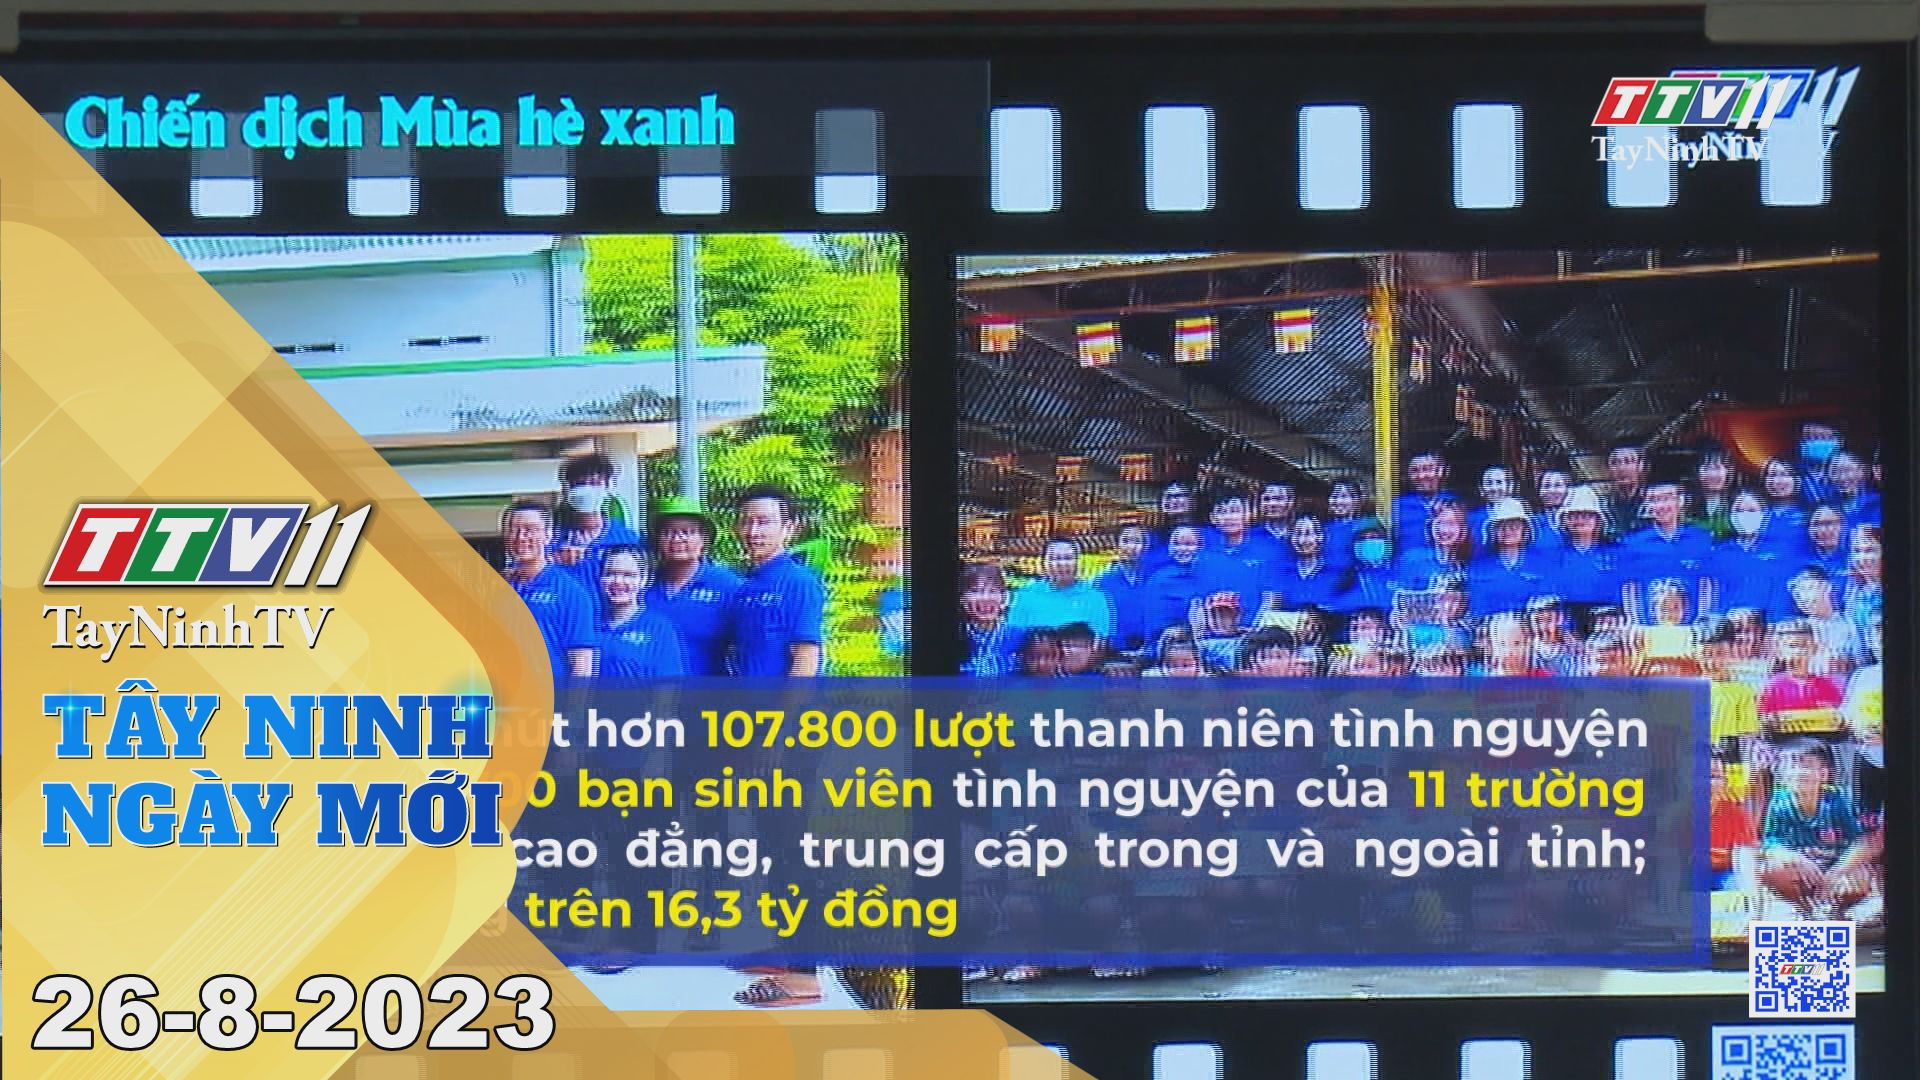 Tây Ninh ngày mới 26-8-2023 | Tin tức hôm nay | TayNinhTV